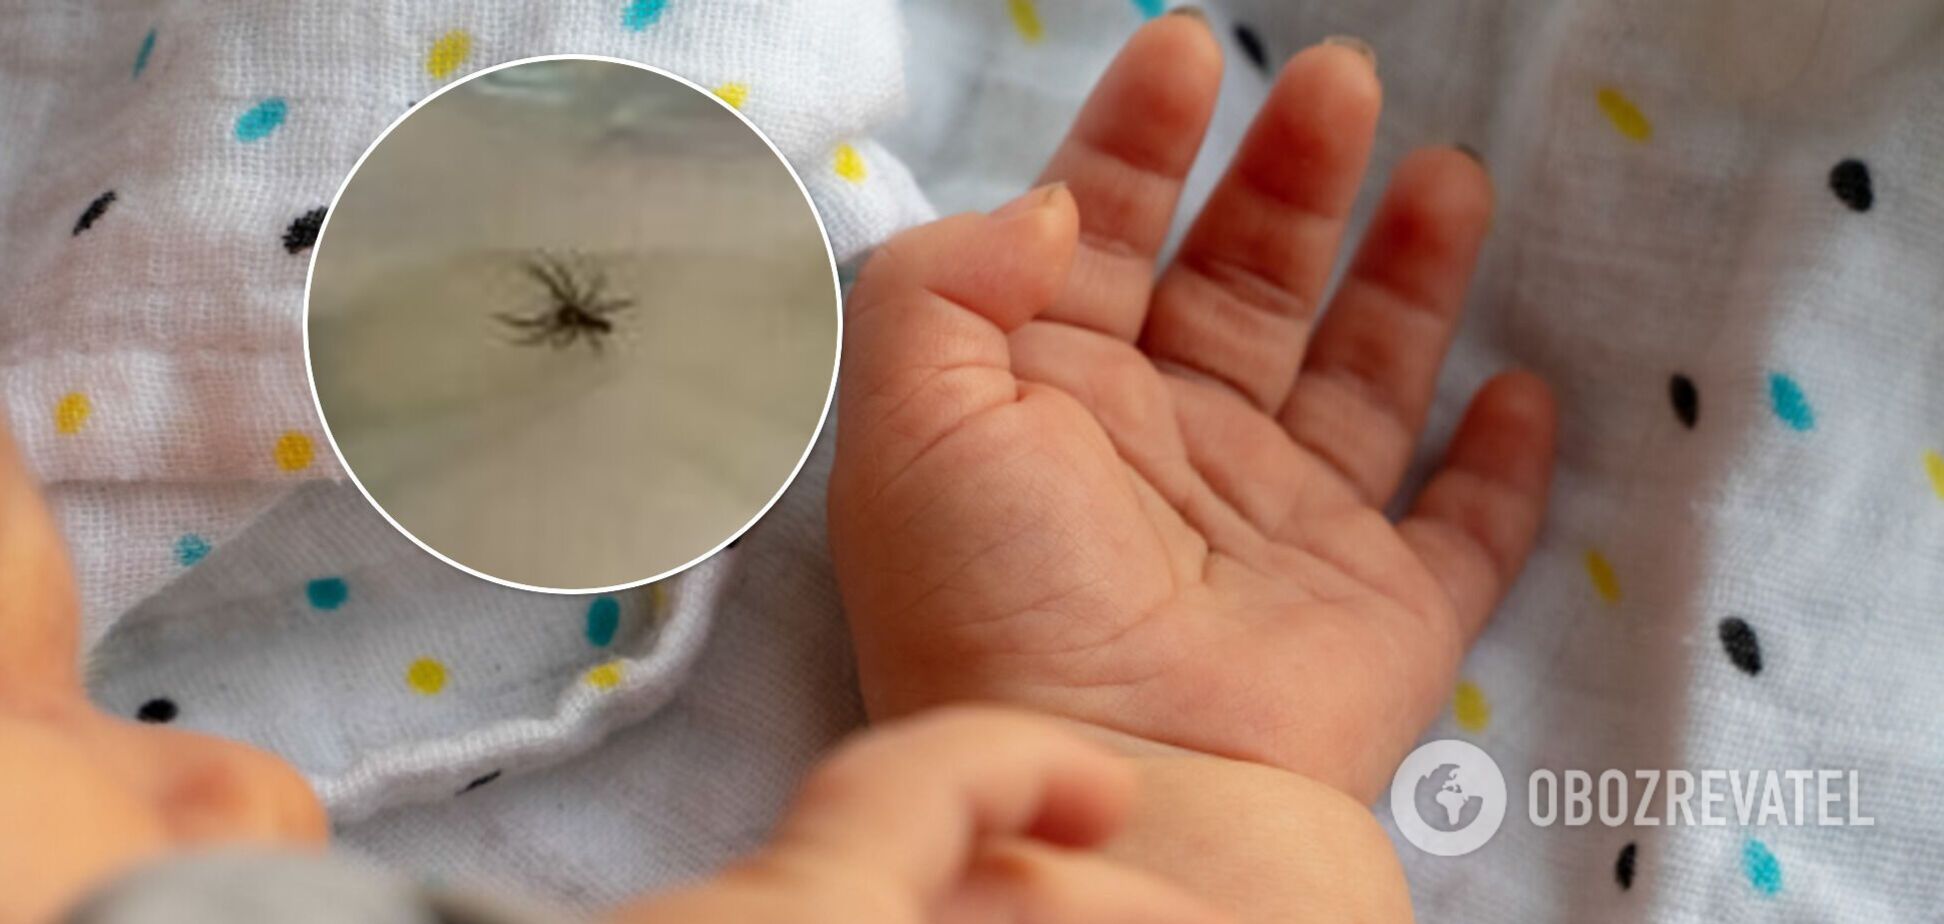 Австралийка заметила ядовитого паука в подгузнике ребенка. Фото